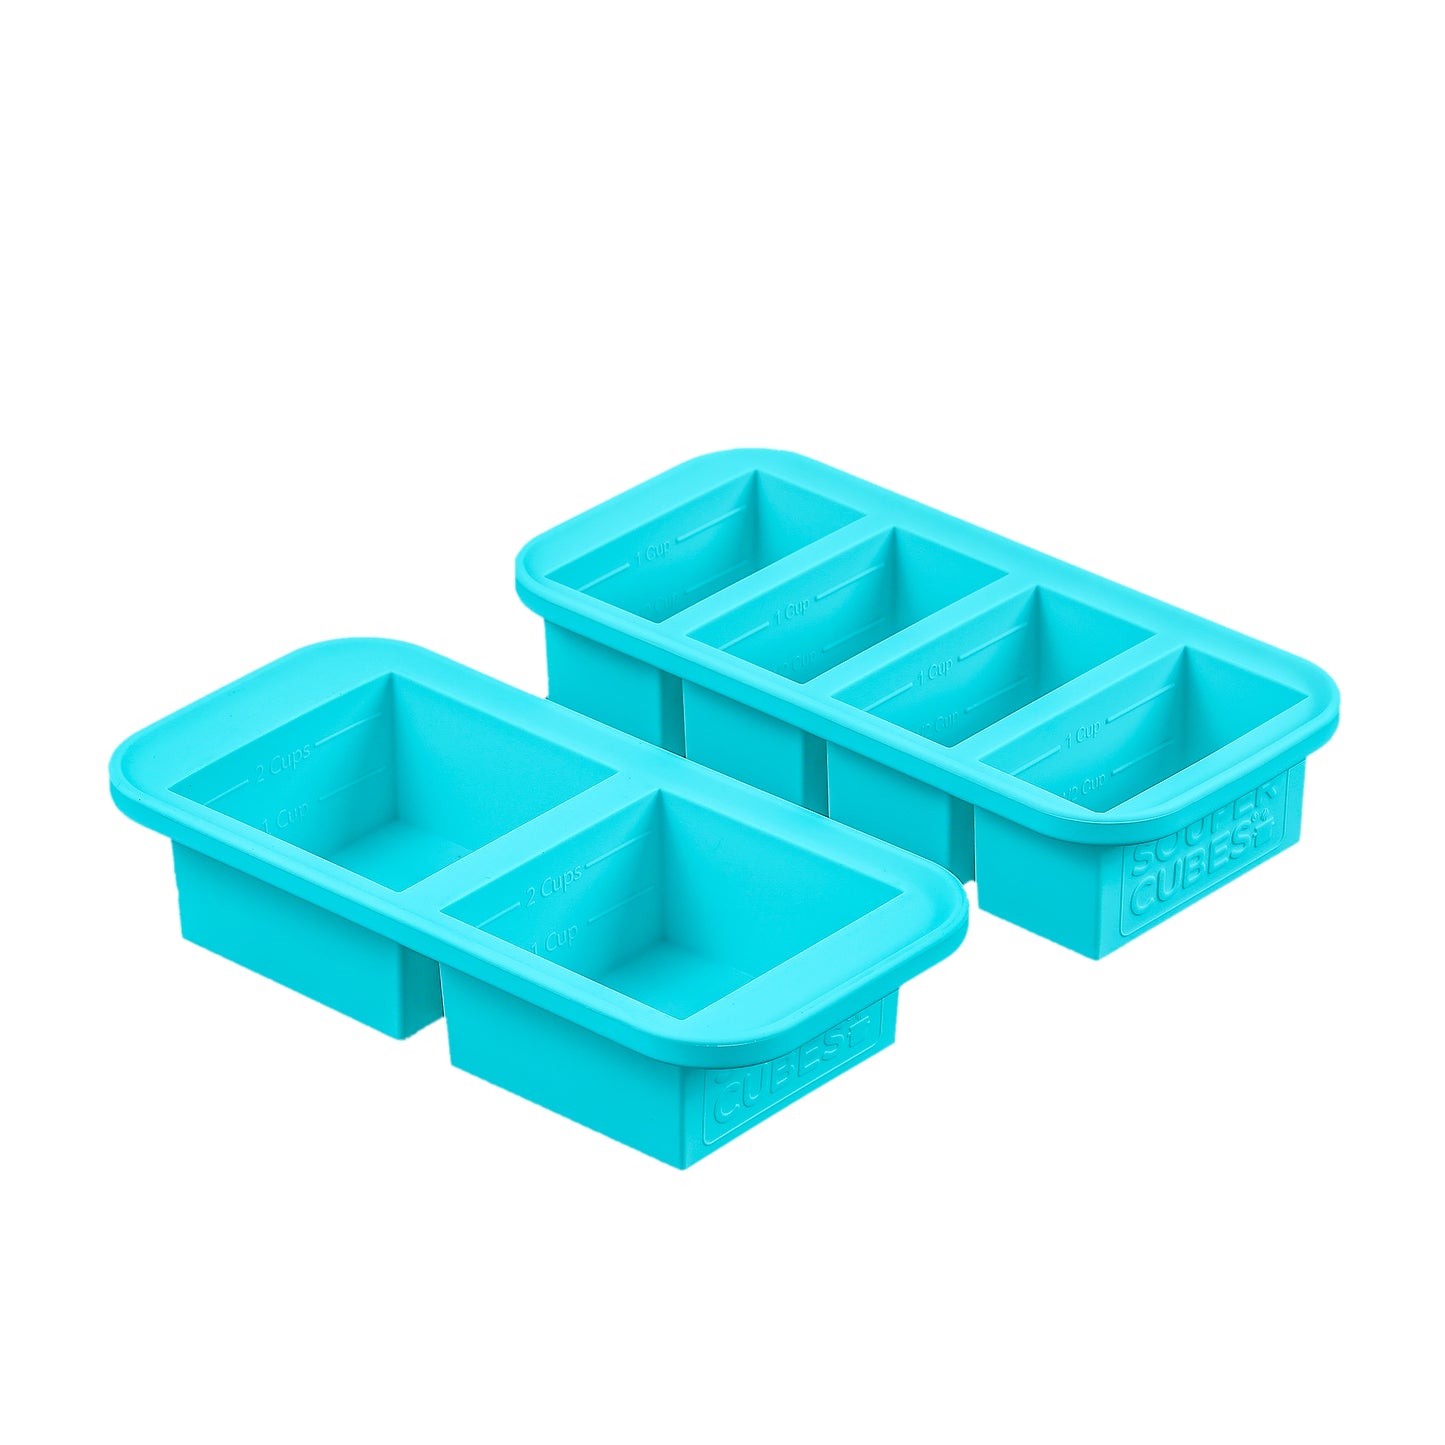 Souper Cubes wholesale products